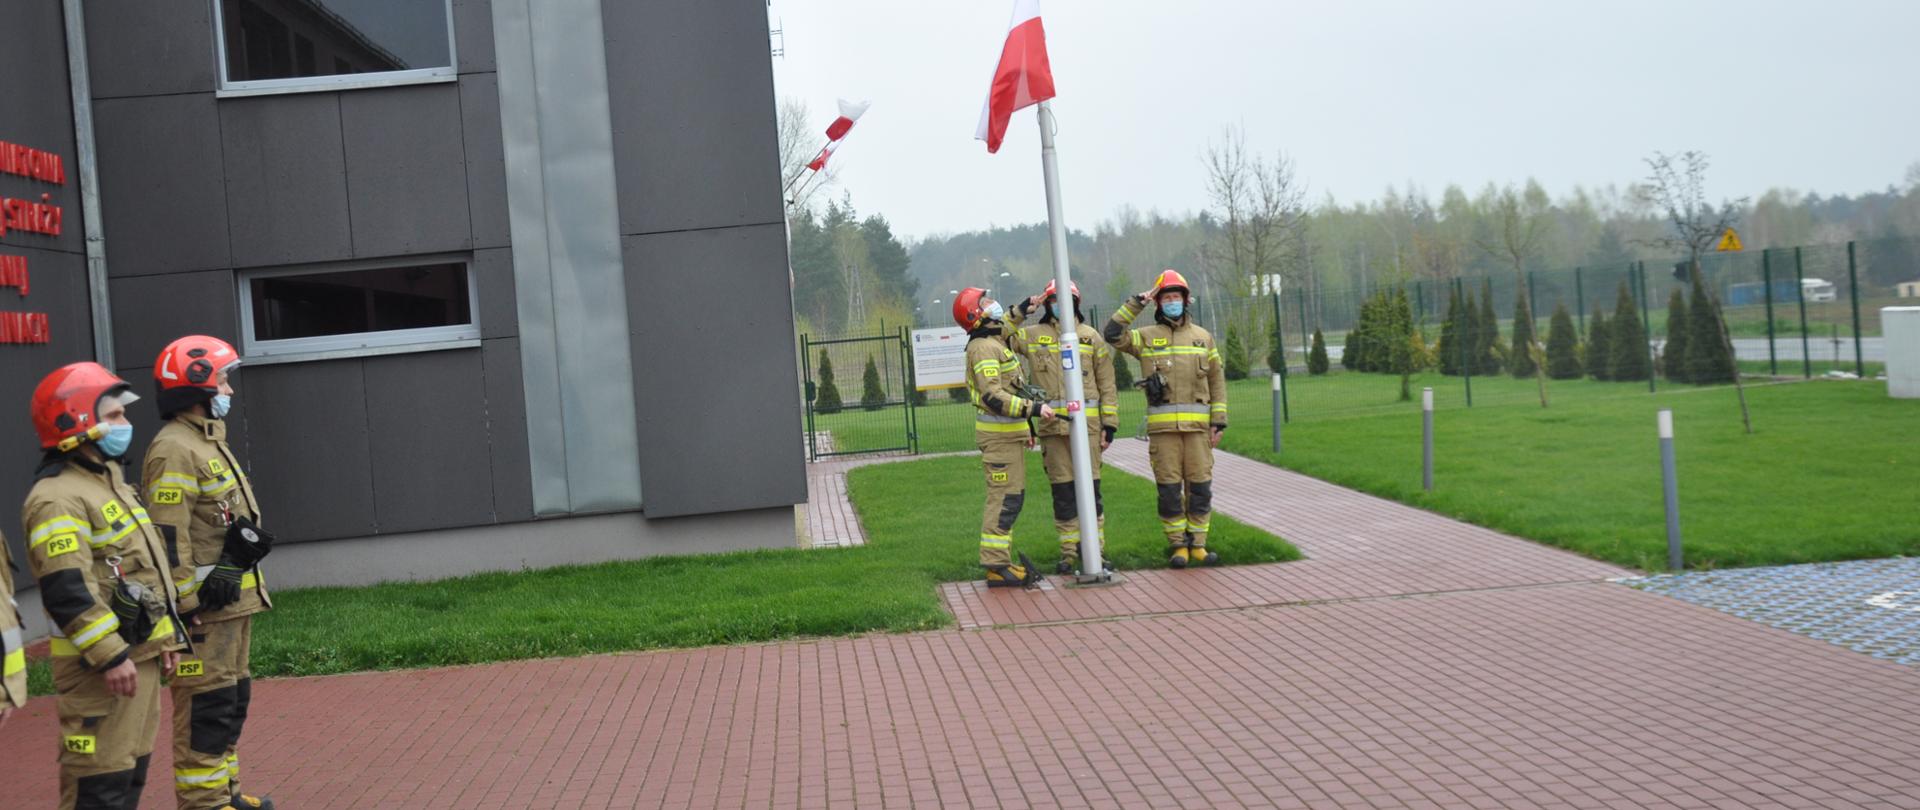 Na zdjęciu poczet flagowy - trójka strażaków podczas podniesienia flagi państwowej - wciąganie na maszt